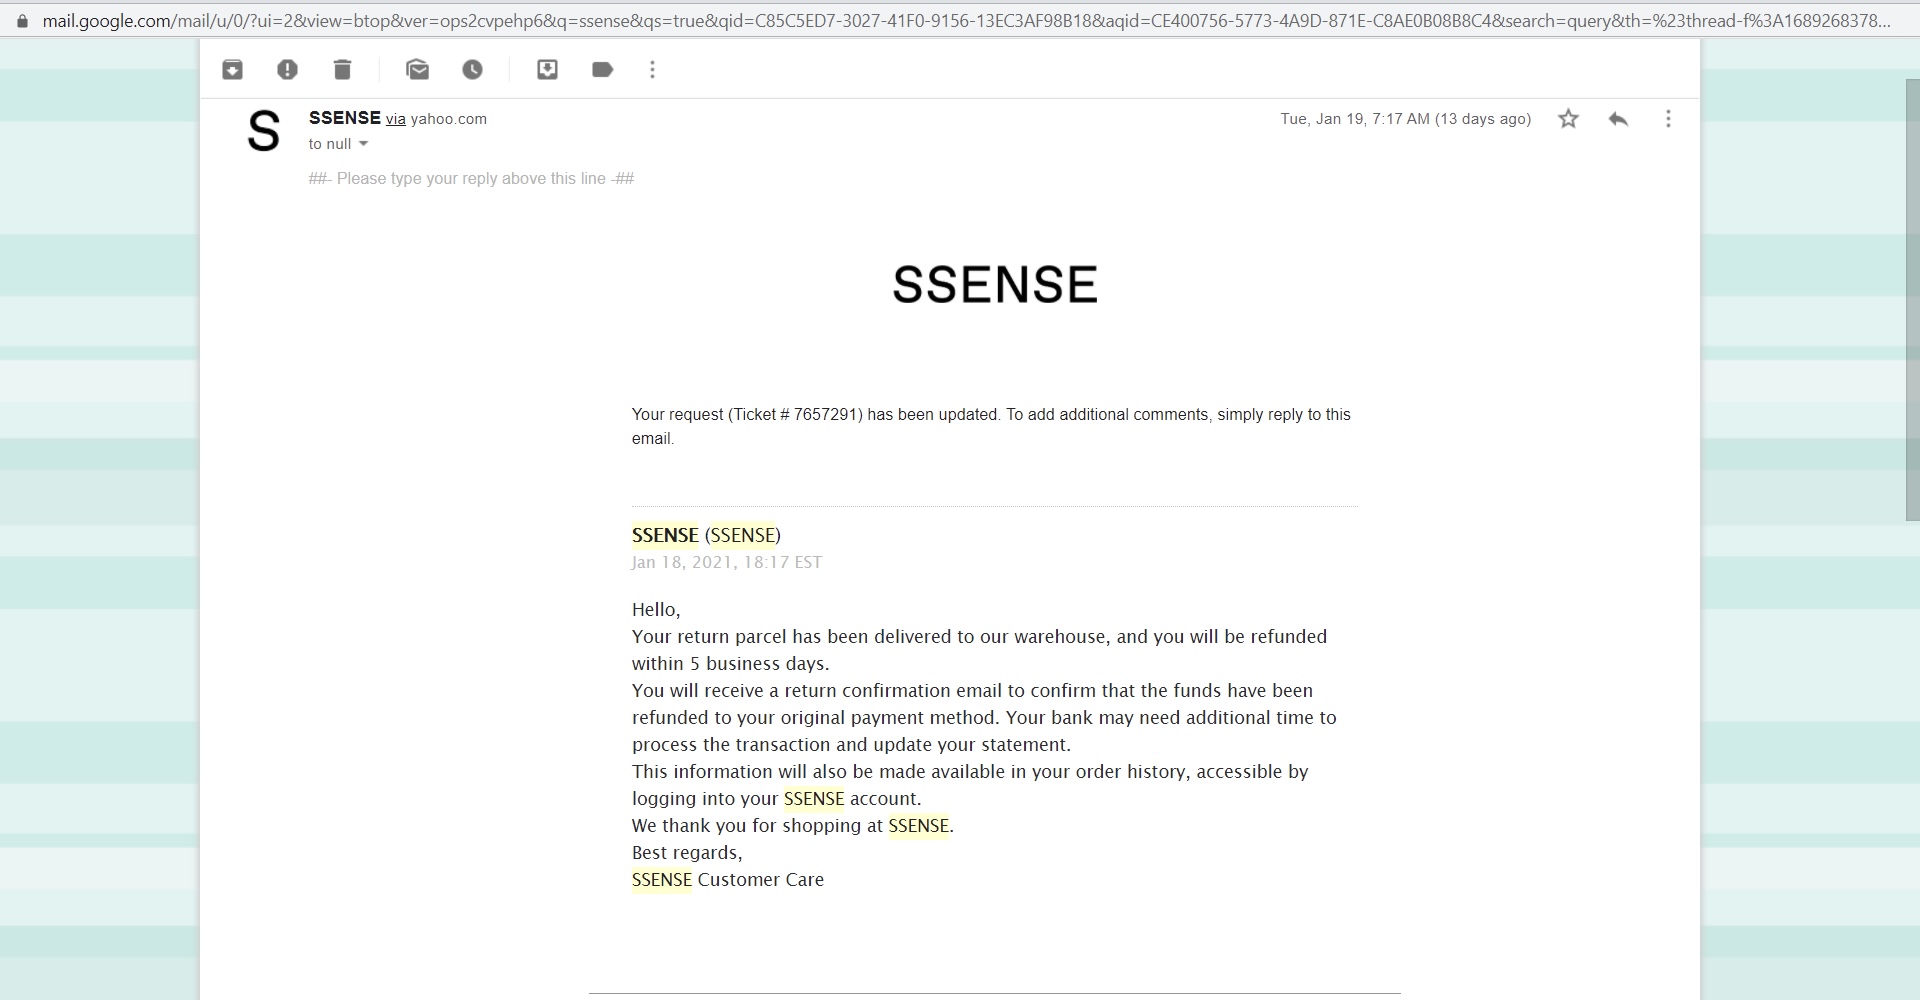 Reviews of Ssense.com 